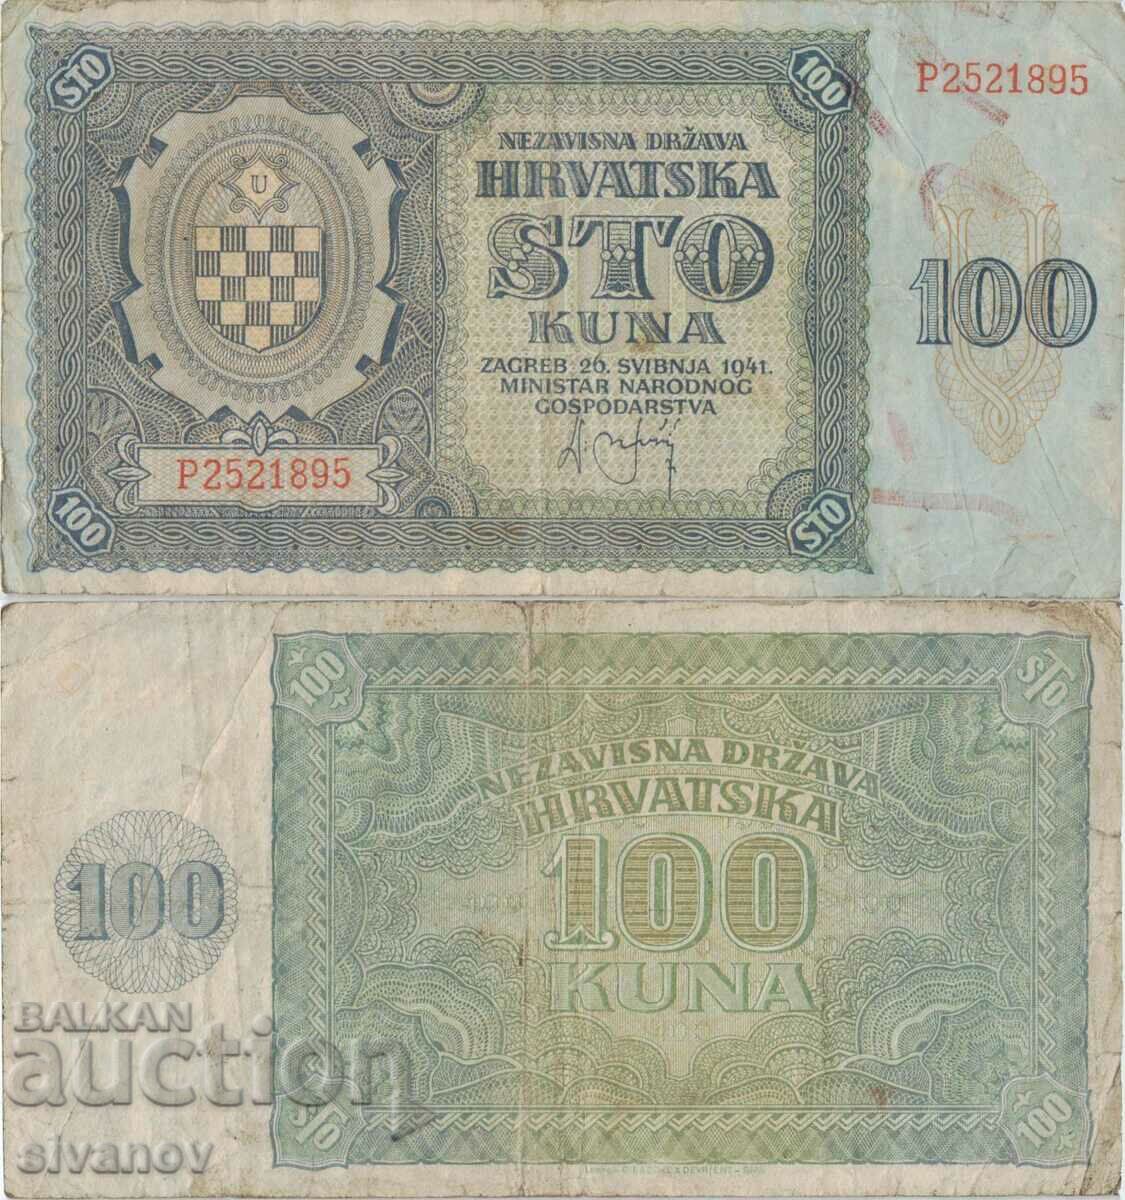 Τραπεζογραμμάτιο Κροατίας 100 kuna 1941 #5321